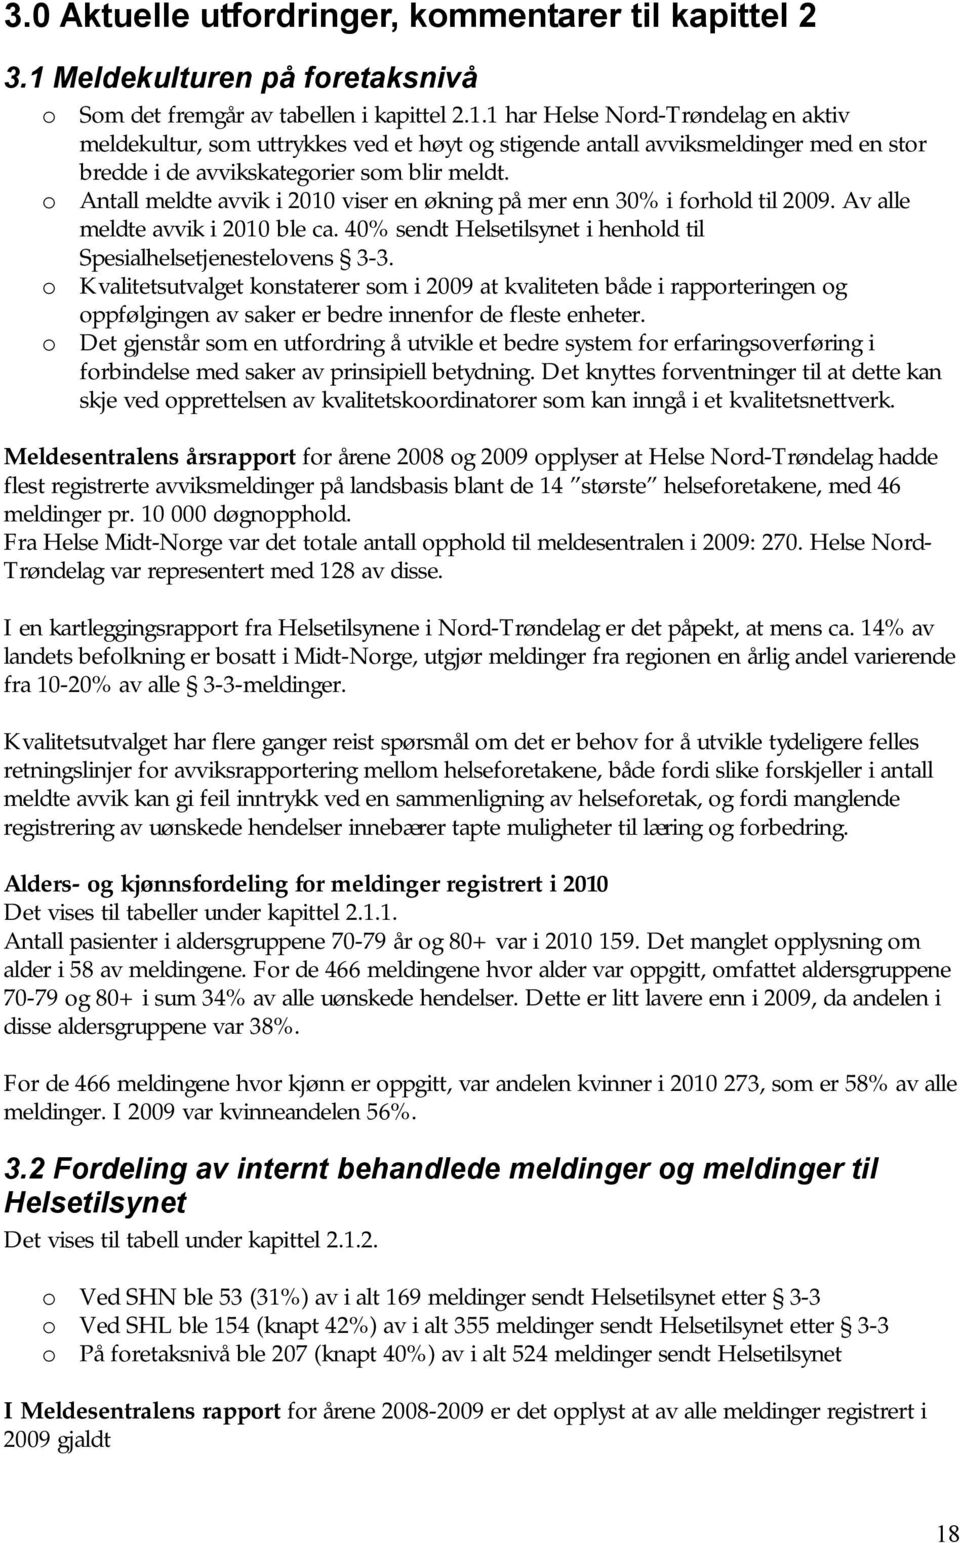 1 har Helse Nord-Trøndelag en aktiv meldekultur, som uttrykkes ved et høyt og stigende antall avviksmeldinger med en stor bredde i de avvikskategorier som blir meldt.